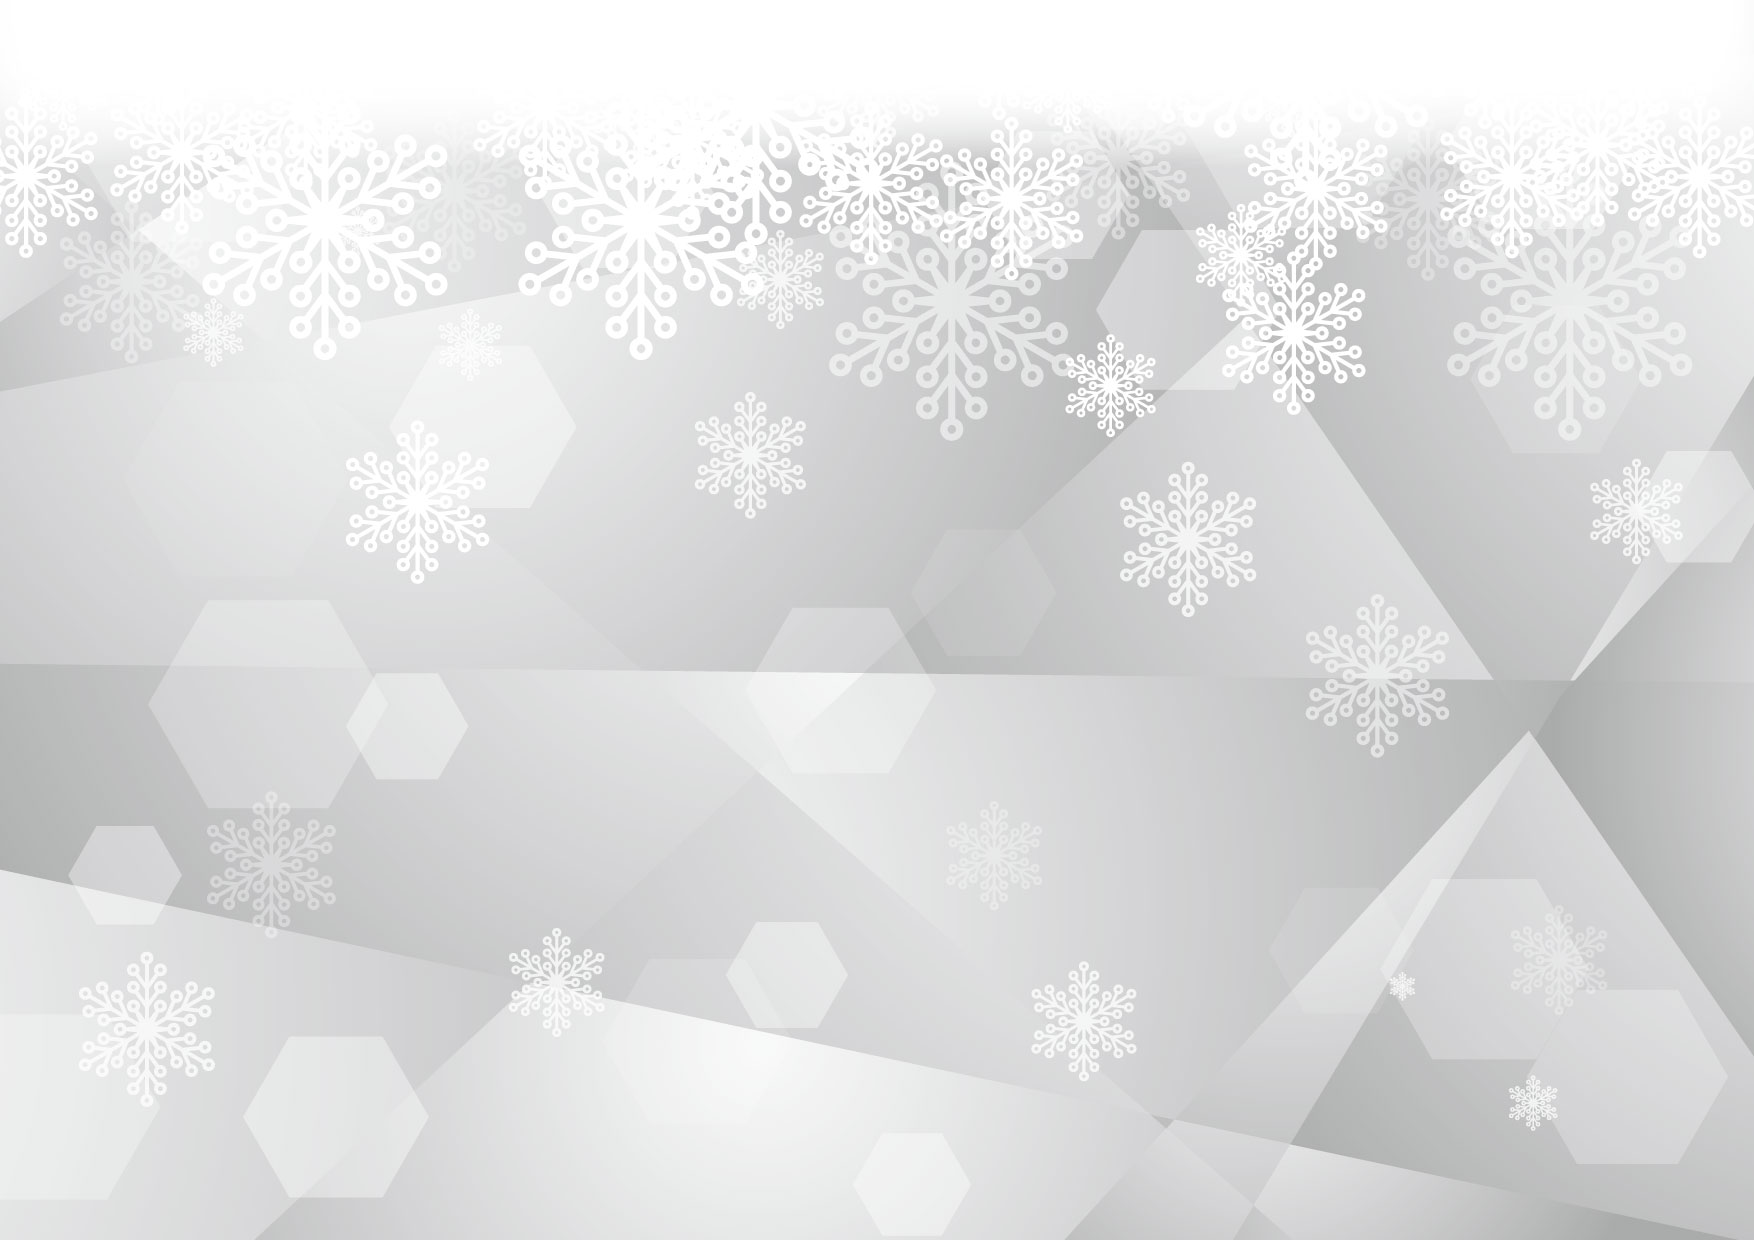 可愛いイラスト無料 雪の結晶 ガラス グレー 背景 Free Illustration Snow Crystal Glass Gray Background 公式 イラスト素材サイト イラストダウンロード